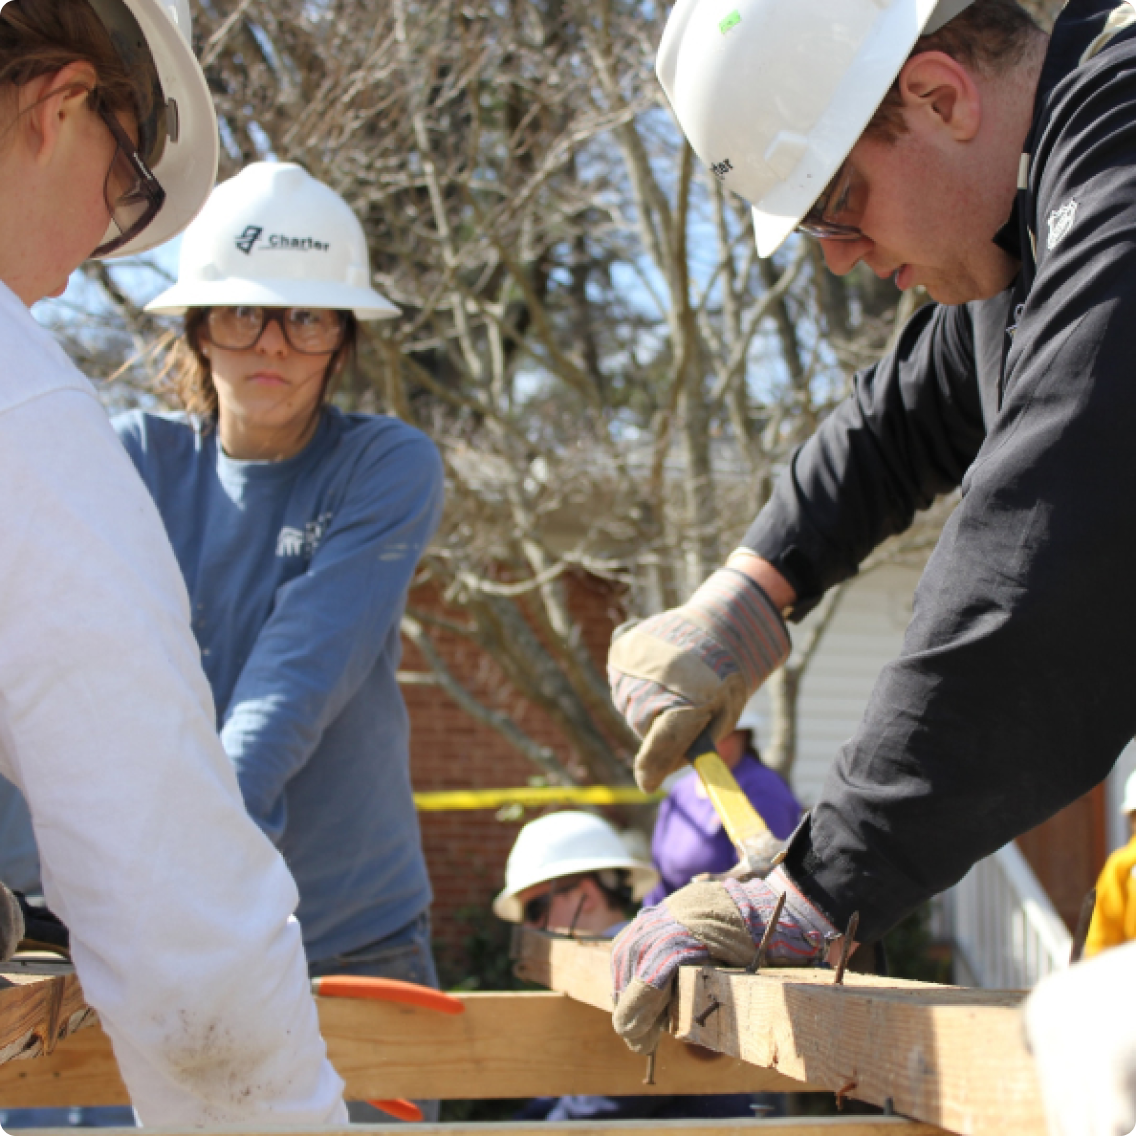 Volunteers doing construction work